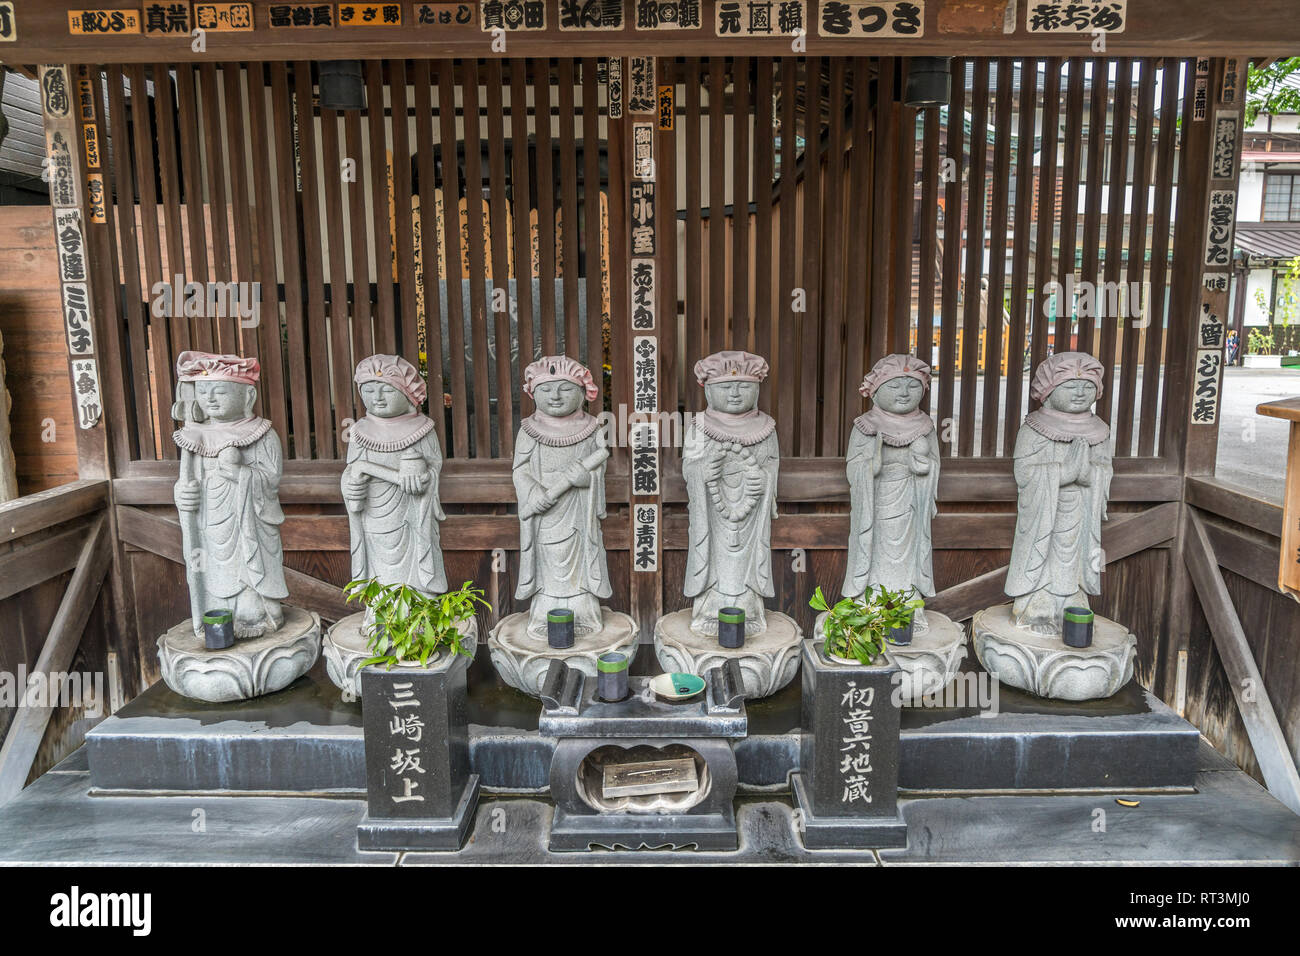 Taito Ward, Tokyo, Giappone - 18 agosto 2017: Hatsune Roku Jizo statue Kanchiin tempio, fondata nel 1611 dal sacerdote Shoyo Ryogaku dedicato a Dainichi Foto Stock